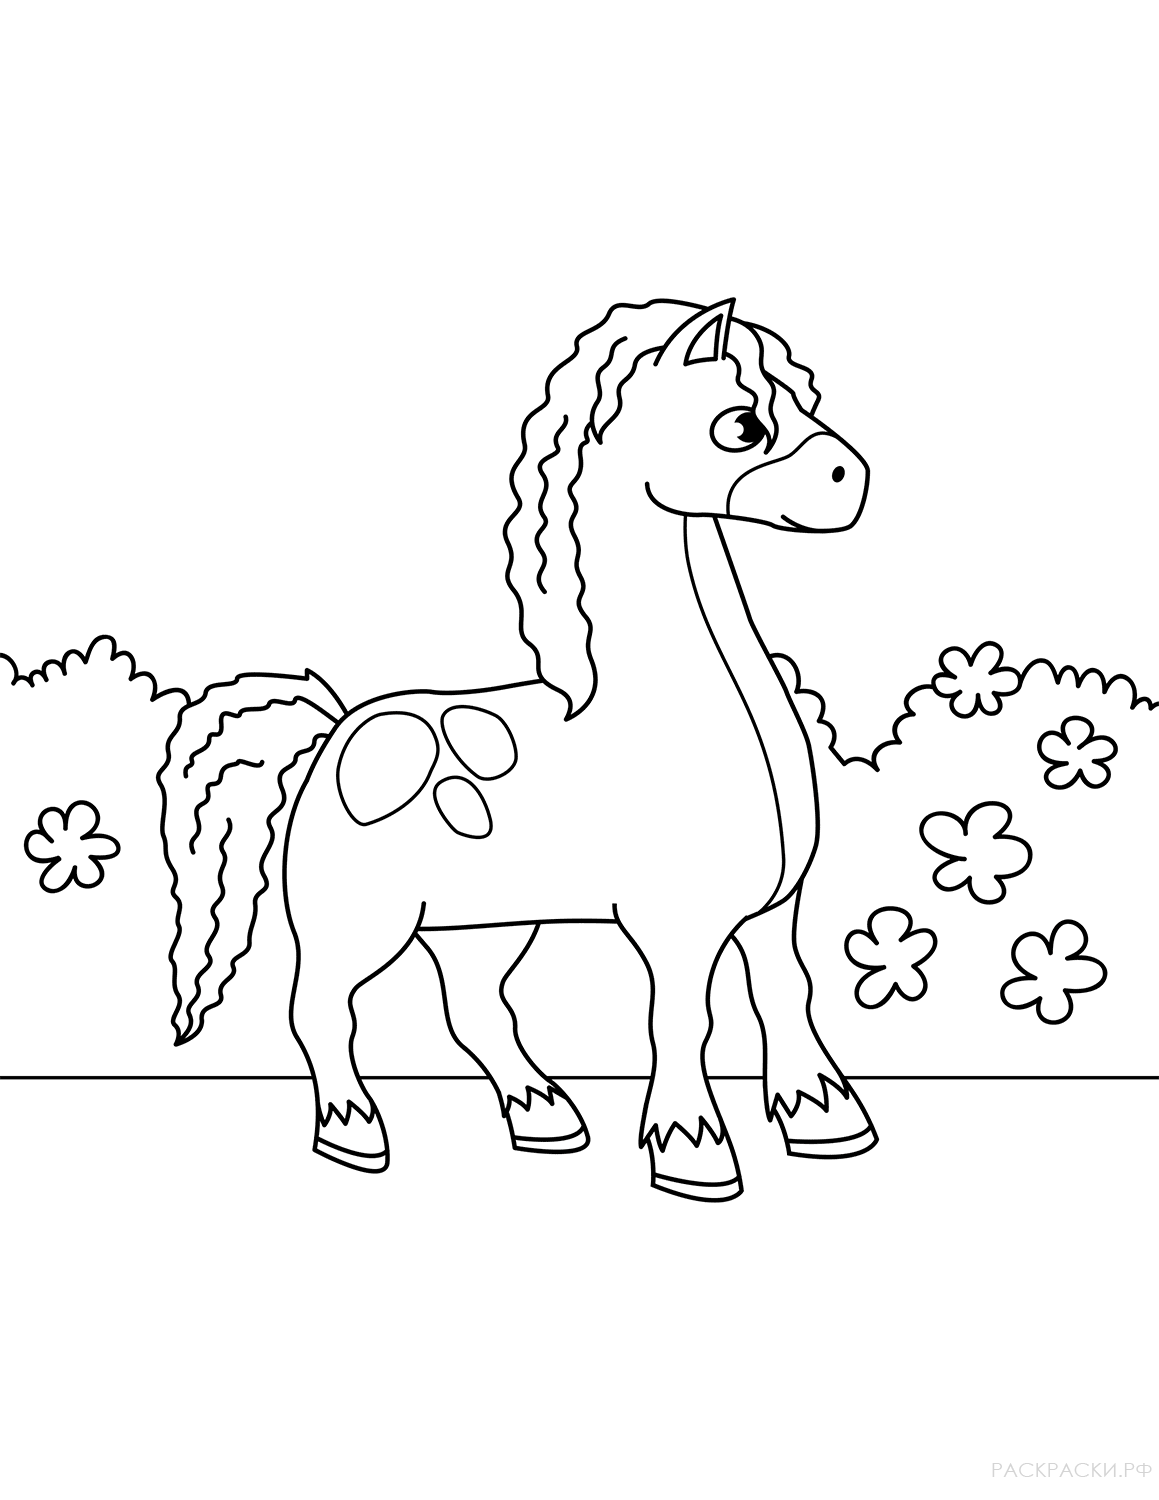 Раскрасить лошадку. Раскраска. Лошадка. Лошадка раскраска для детей. Лошадь раскраска для детей. Раскраски лошади и пони.